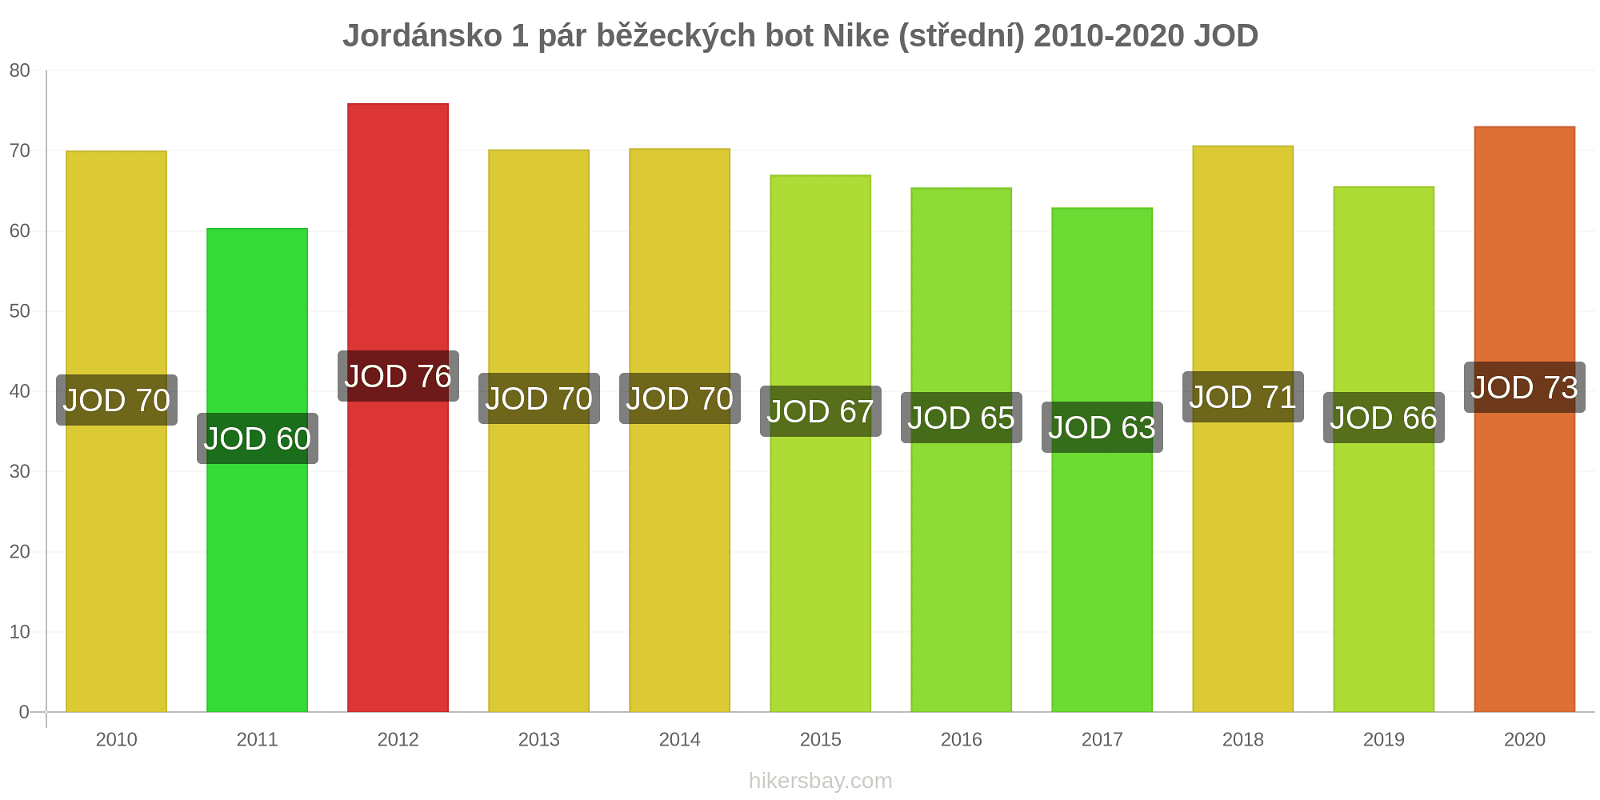 Jordánsko změny cen 1 pár běžeckých bot Nike (střední) hikersbay.com